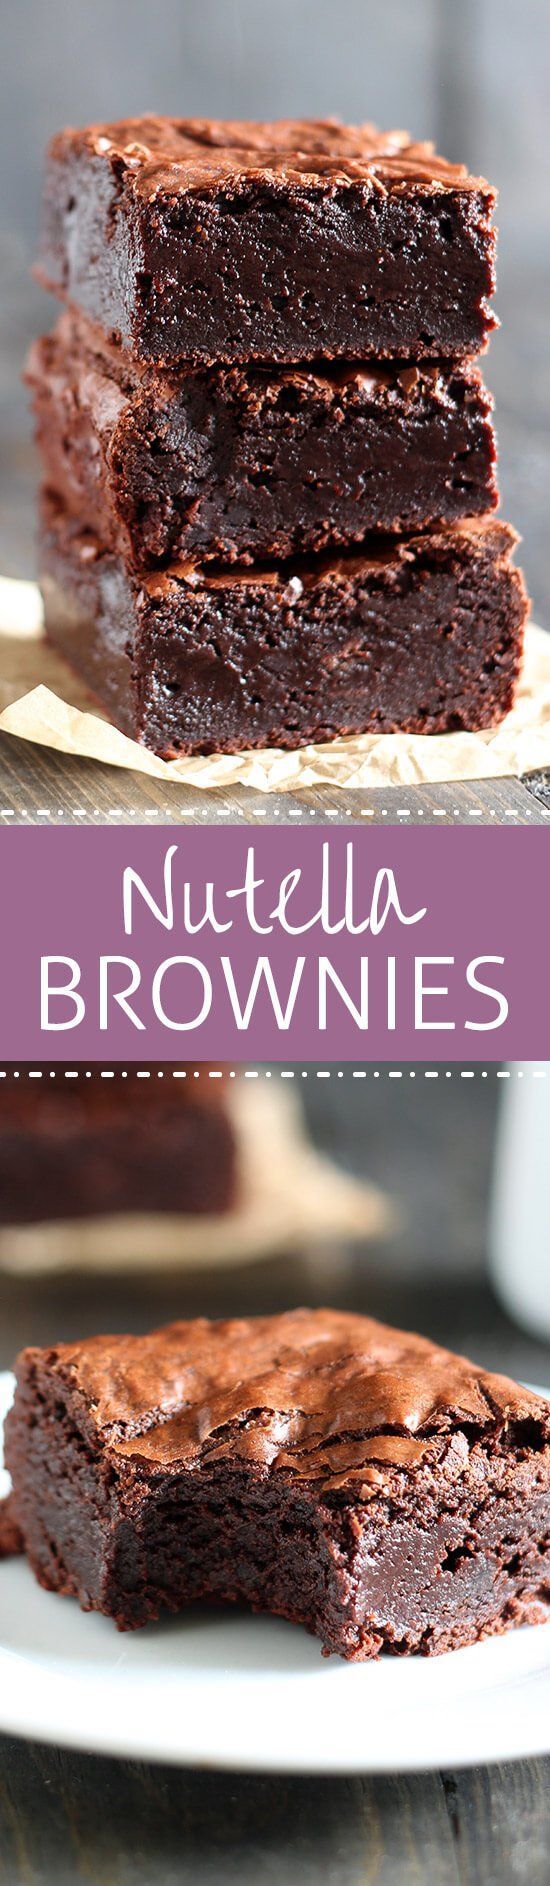 Nutella Brownies